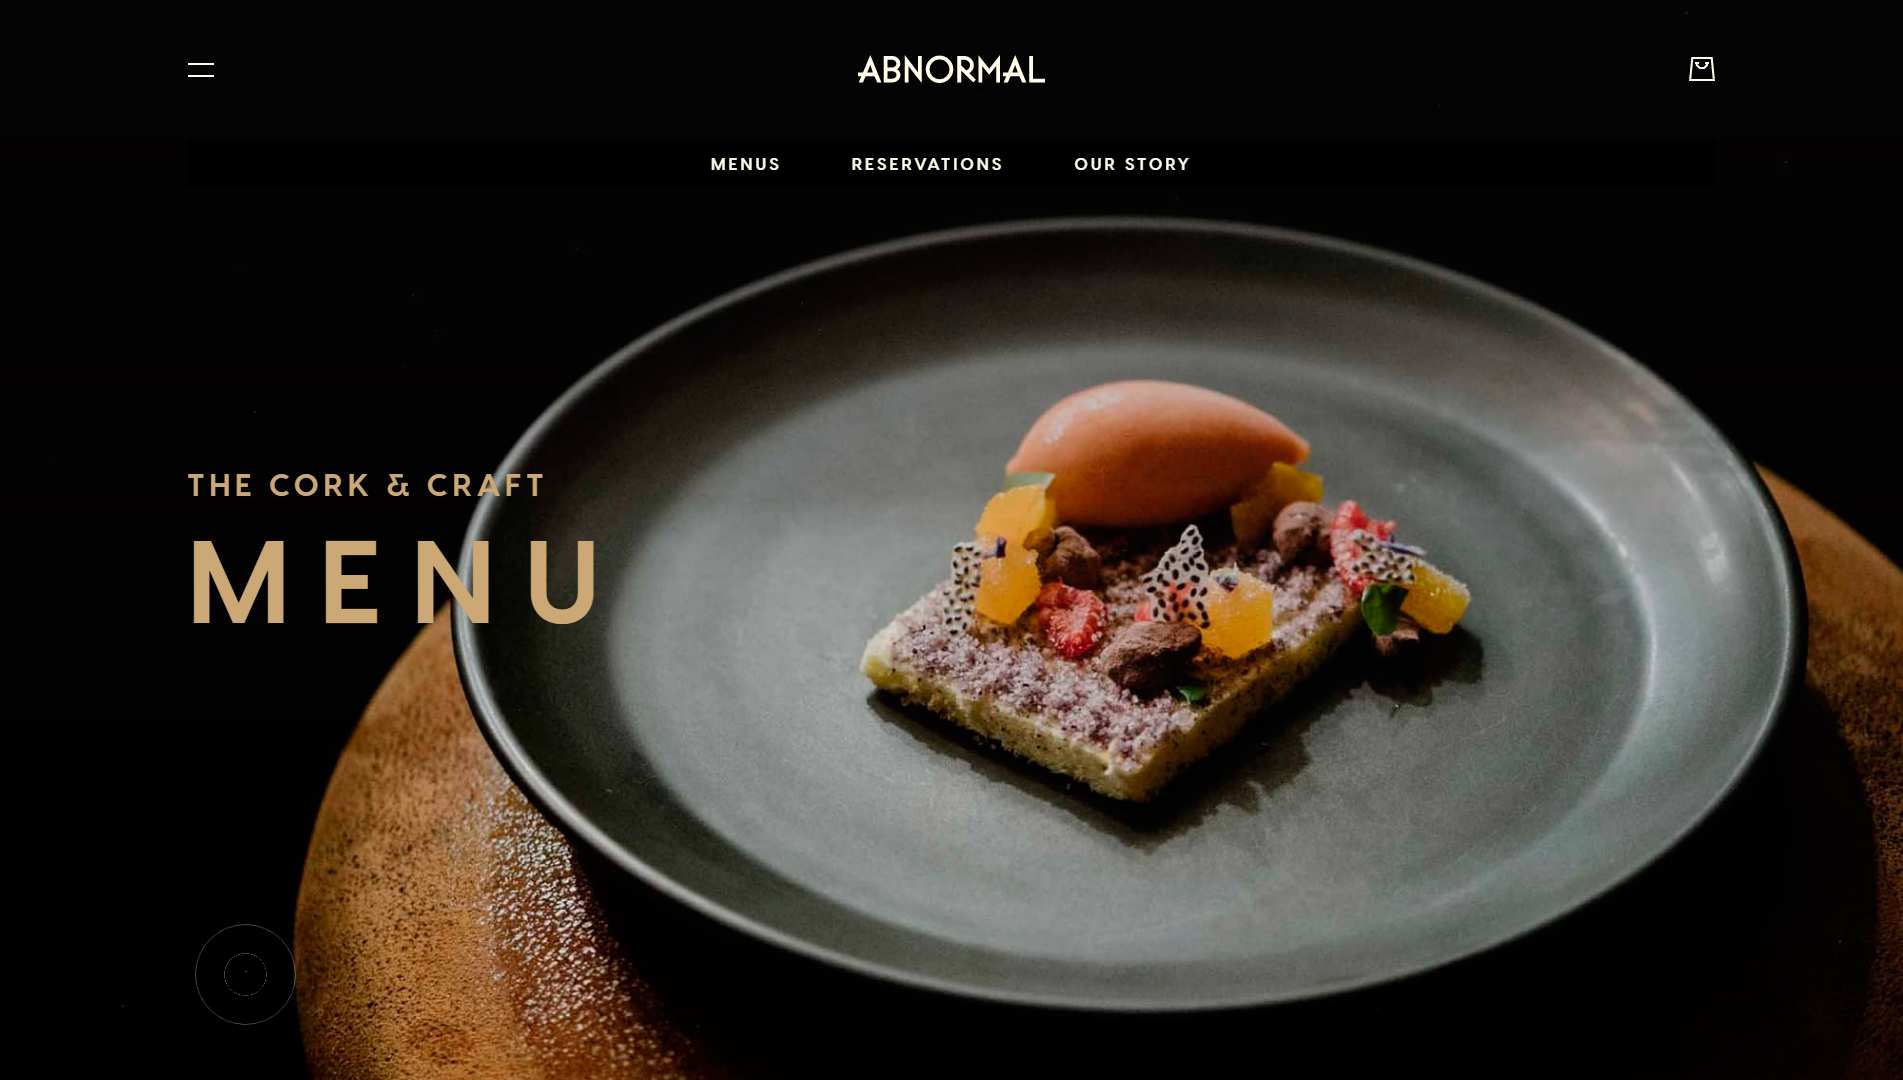 ejemplos-paginas-web-restaurante-abnormal-05-